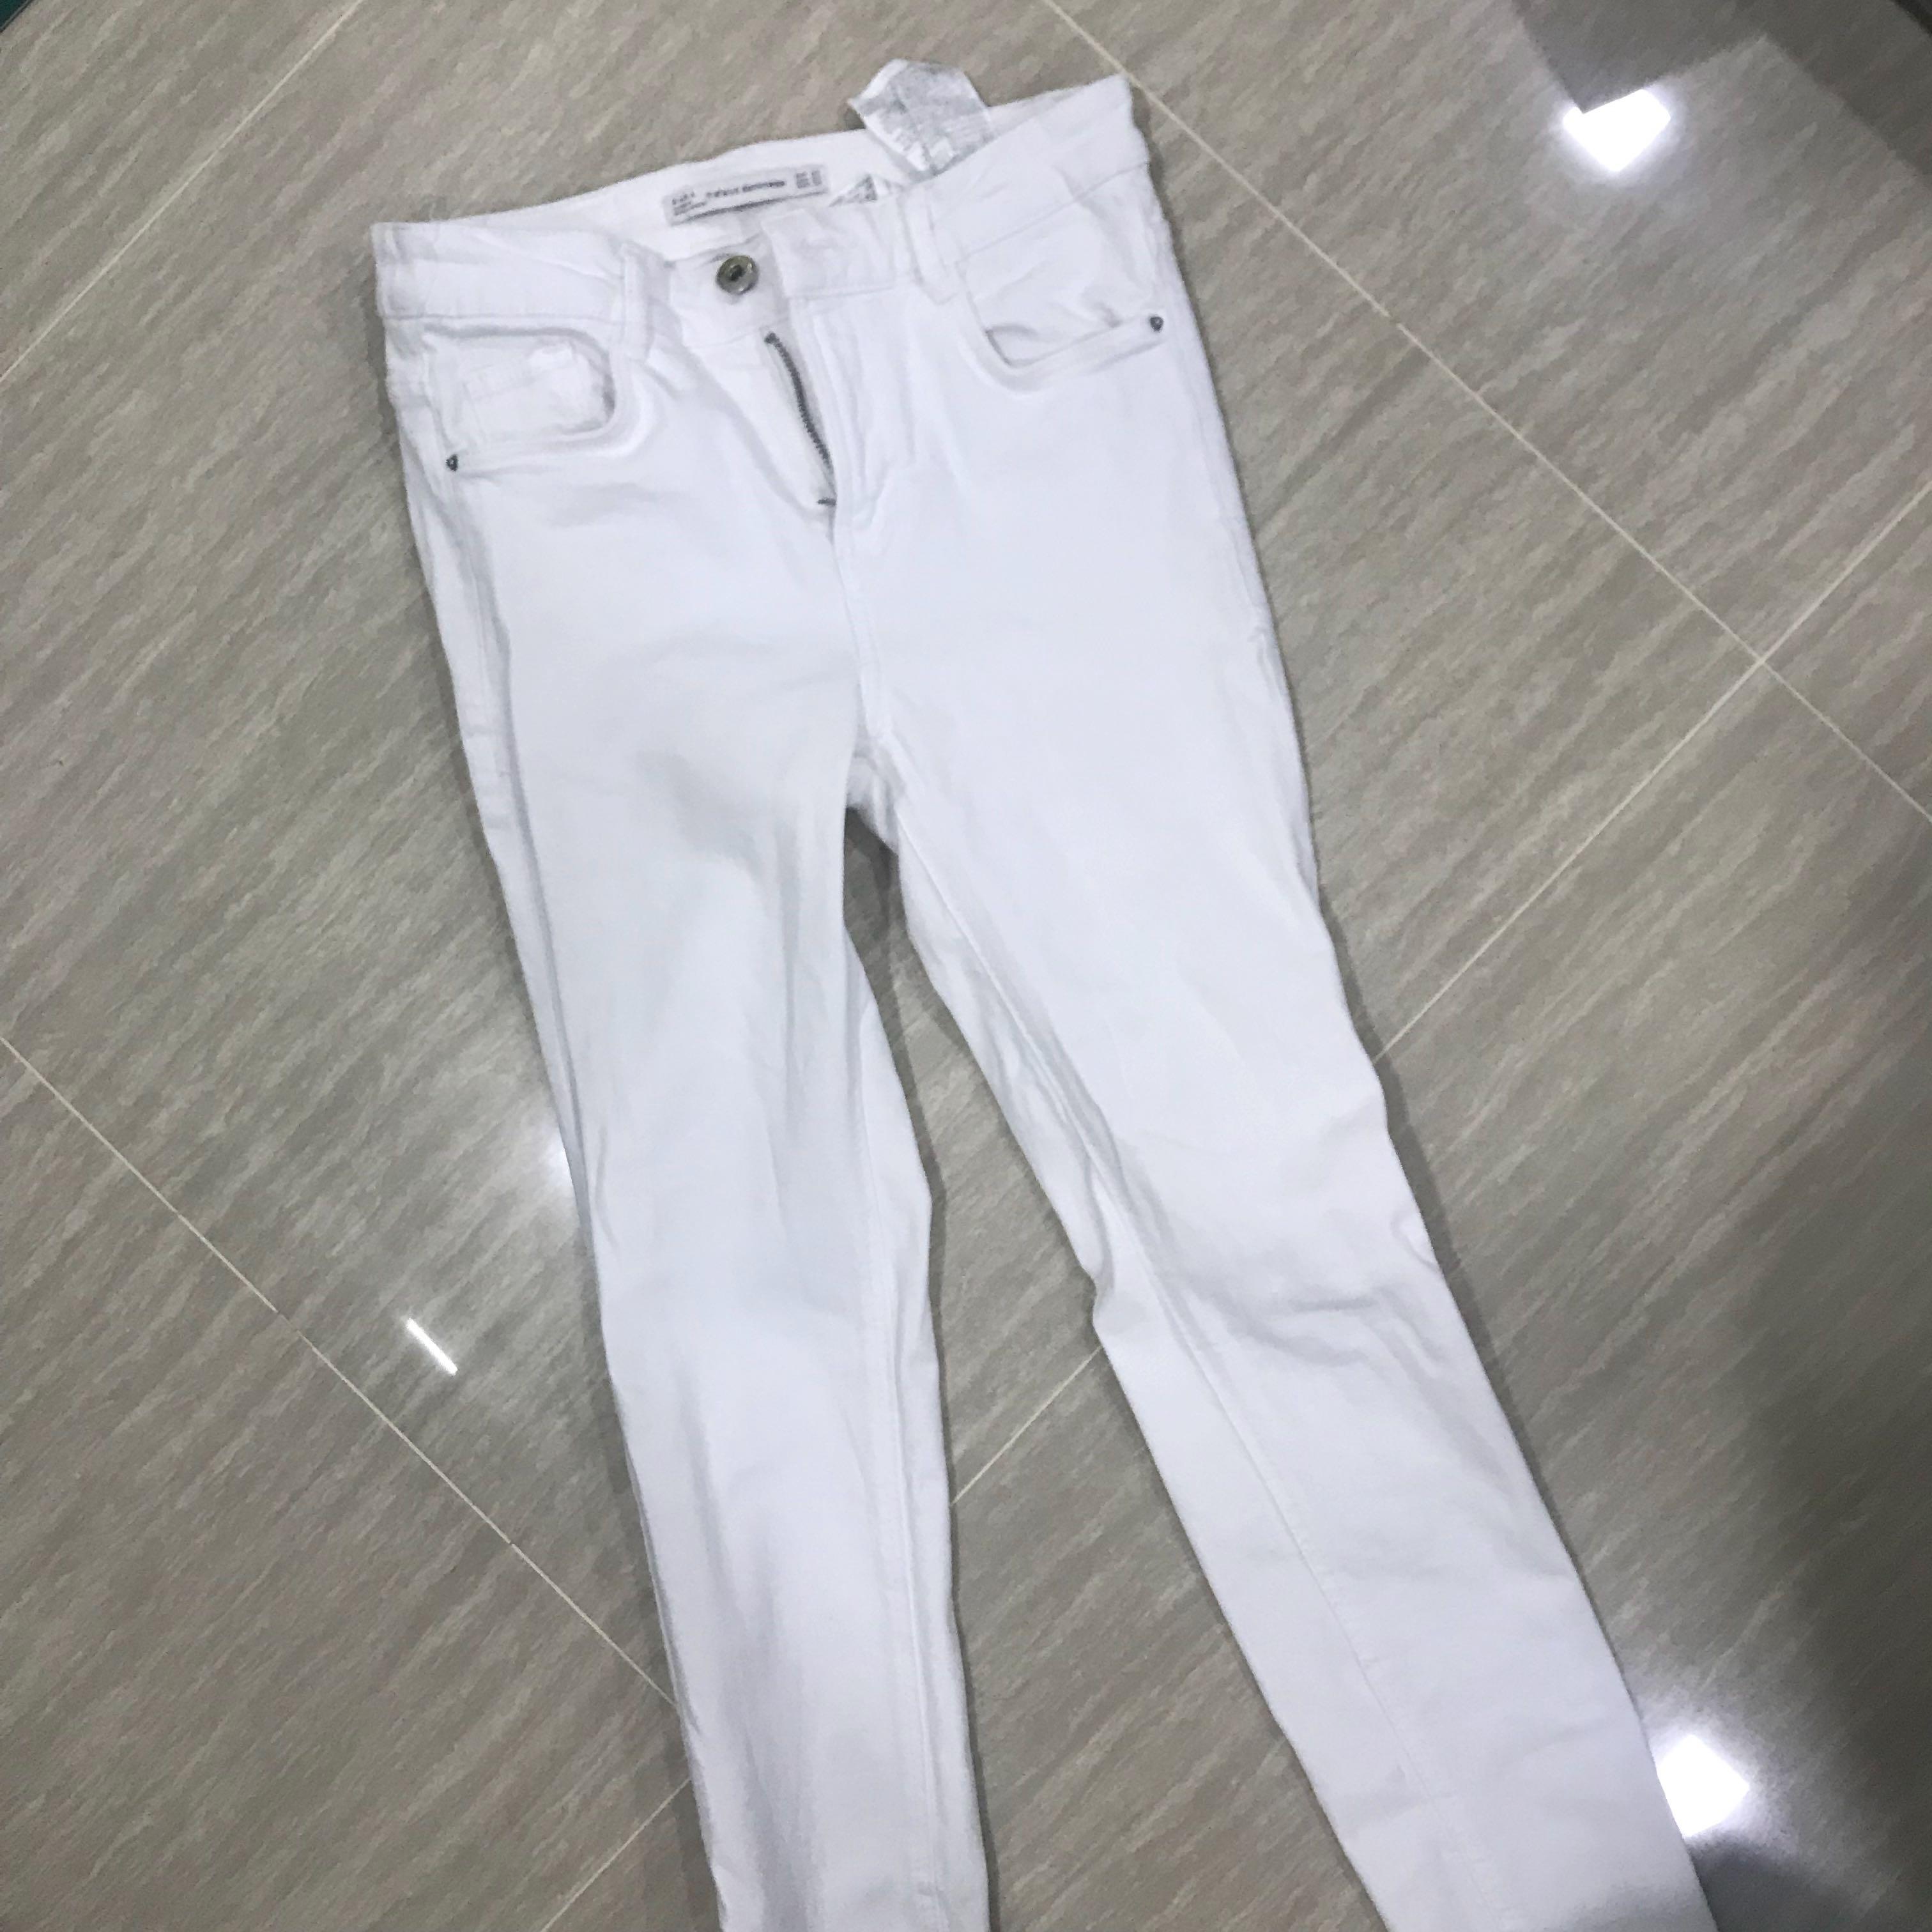 zara white skinny jeans